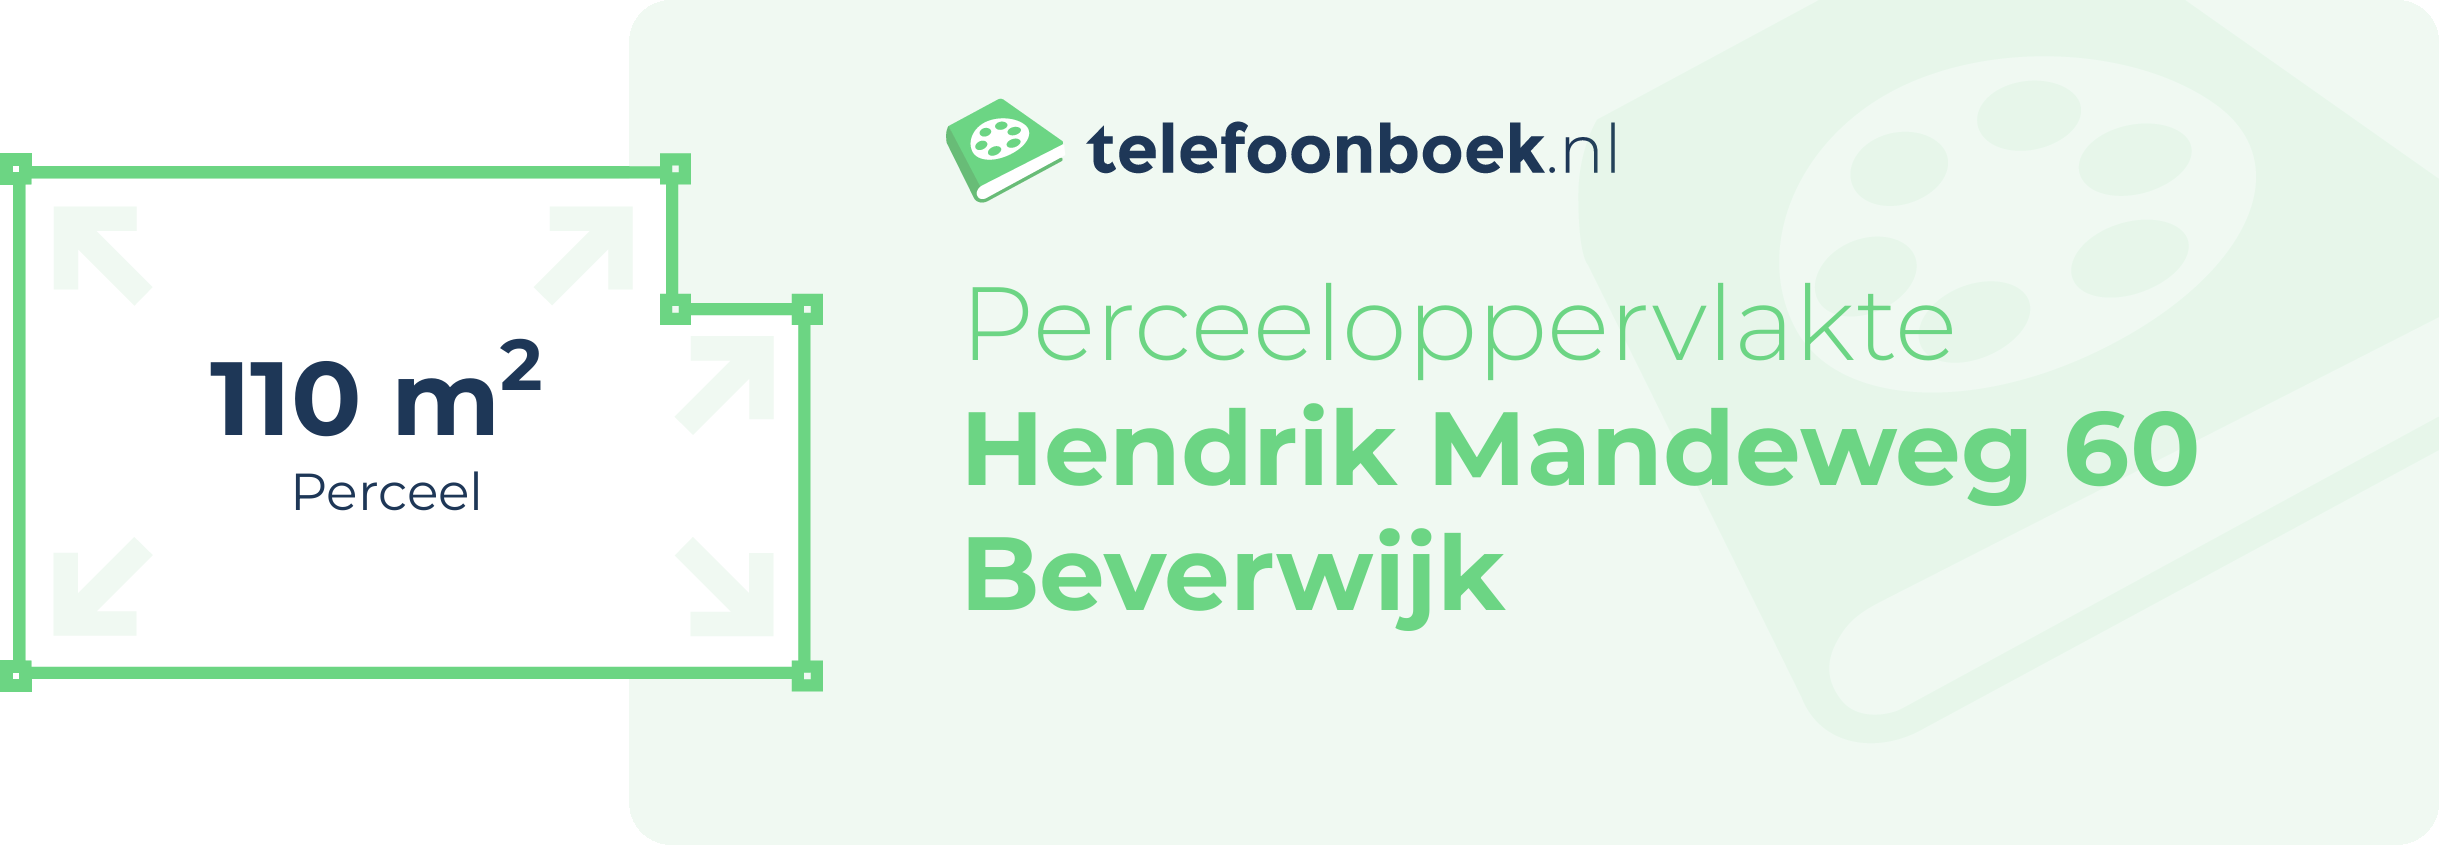 Perceeloppervlakte Hendrik Mandeweg 60 Beverwijk